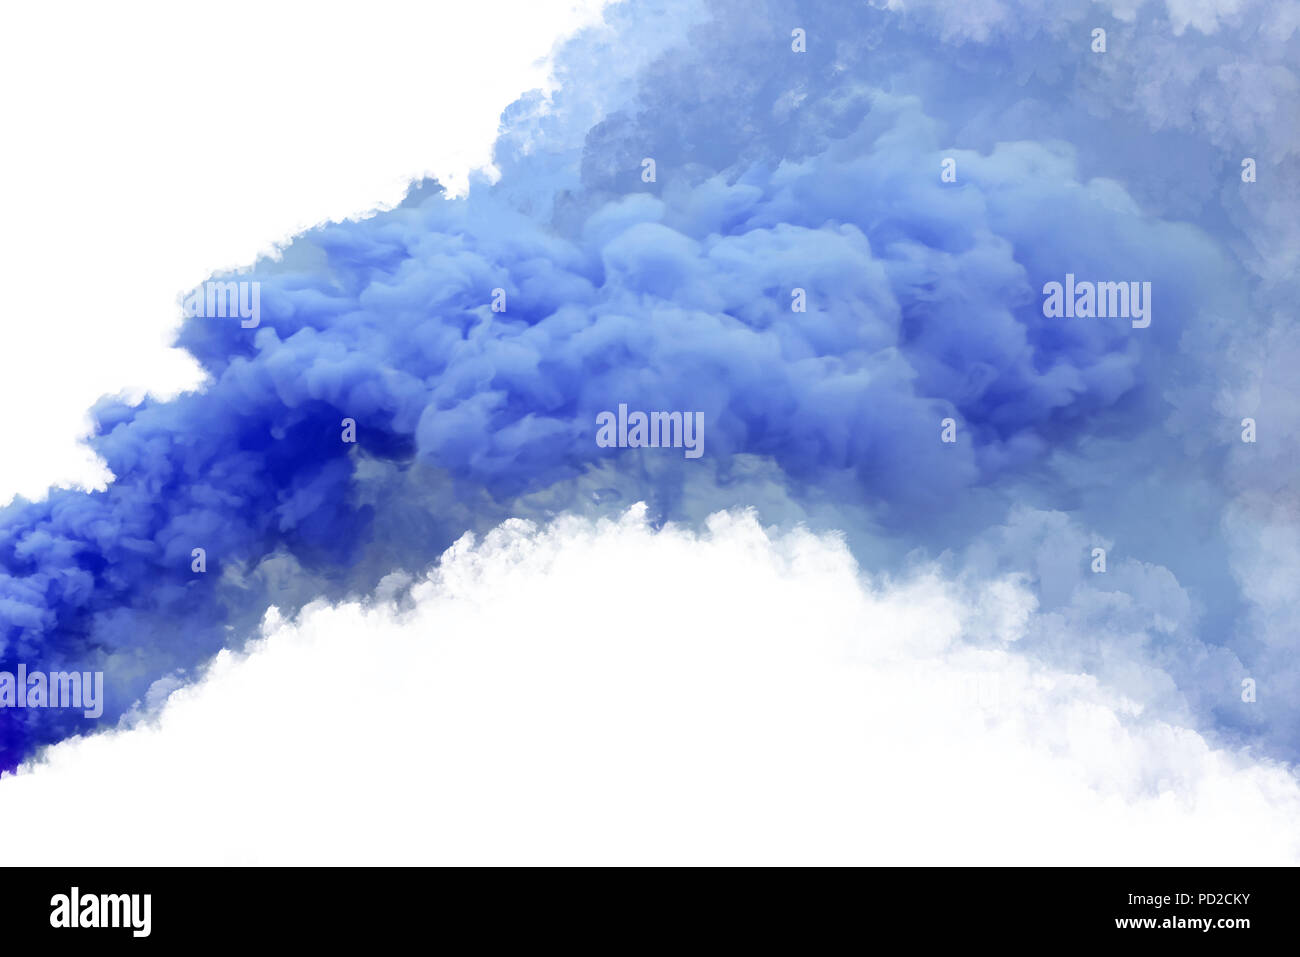 Blue smoke, isolated on white background. Stock Photo